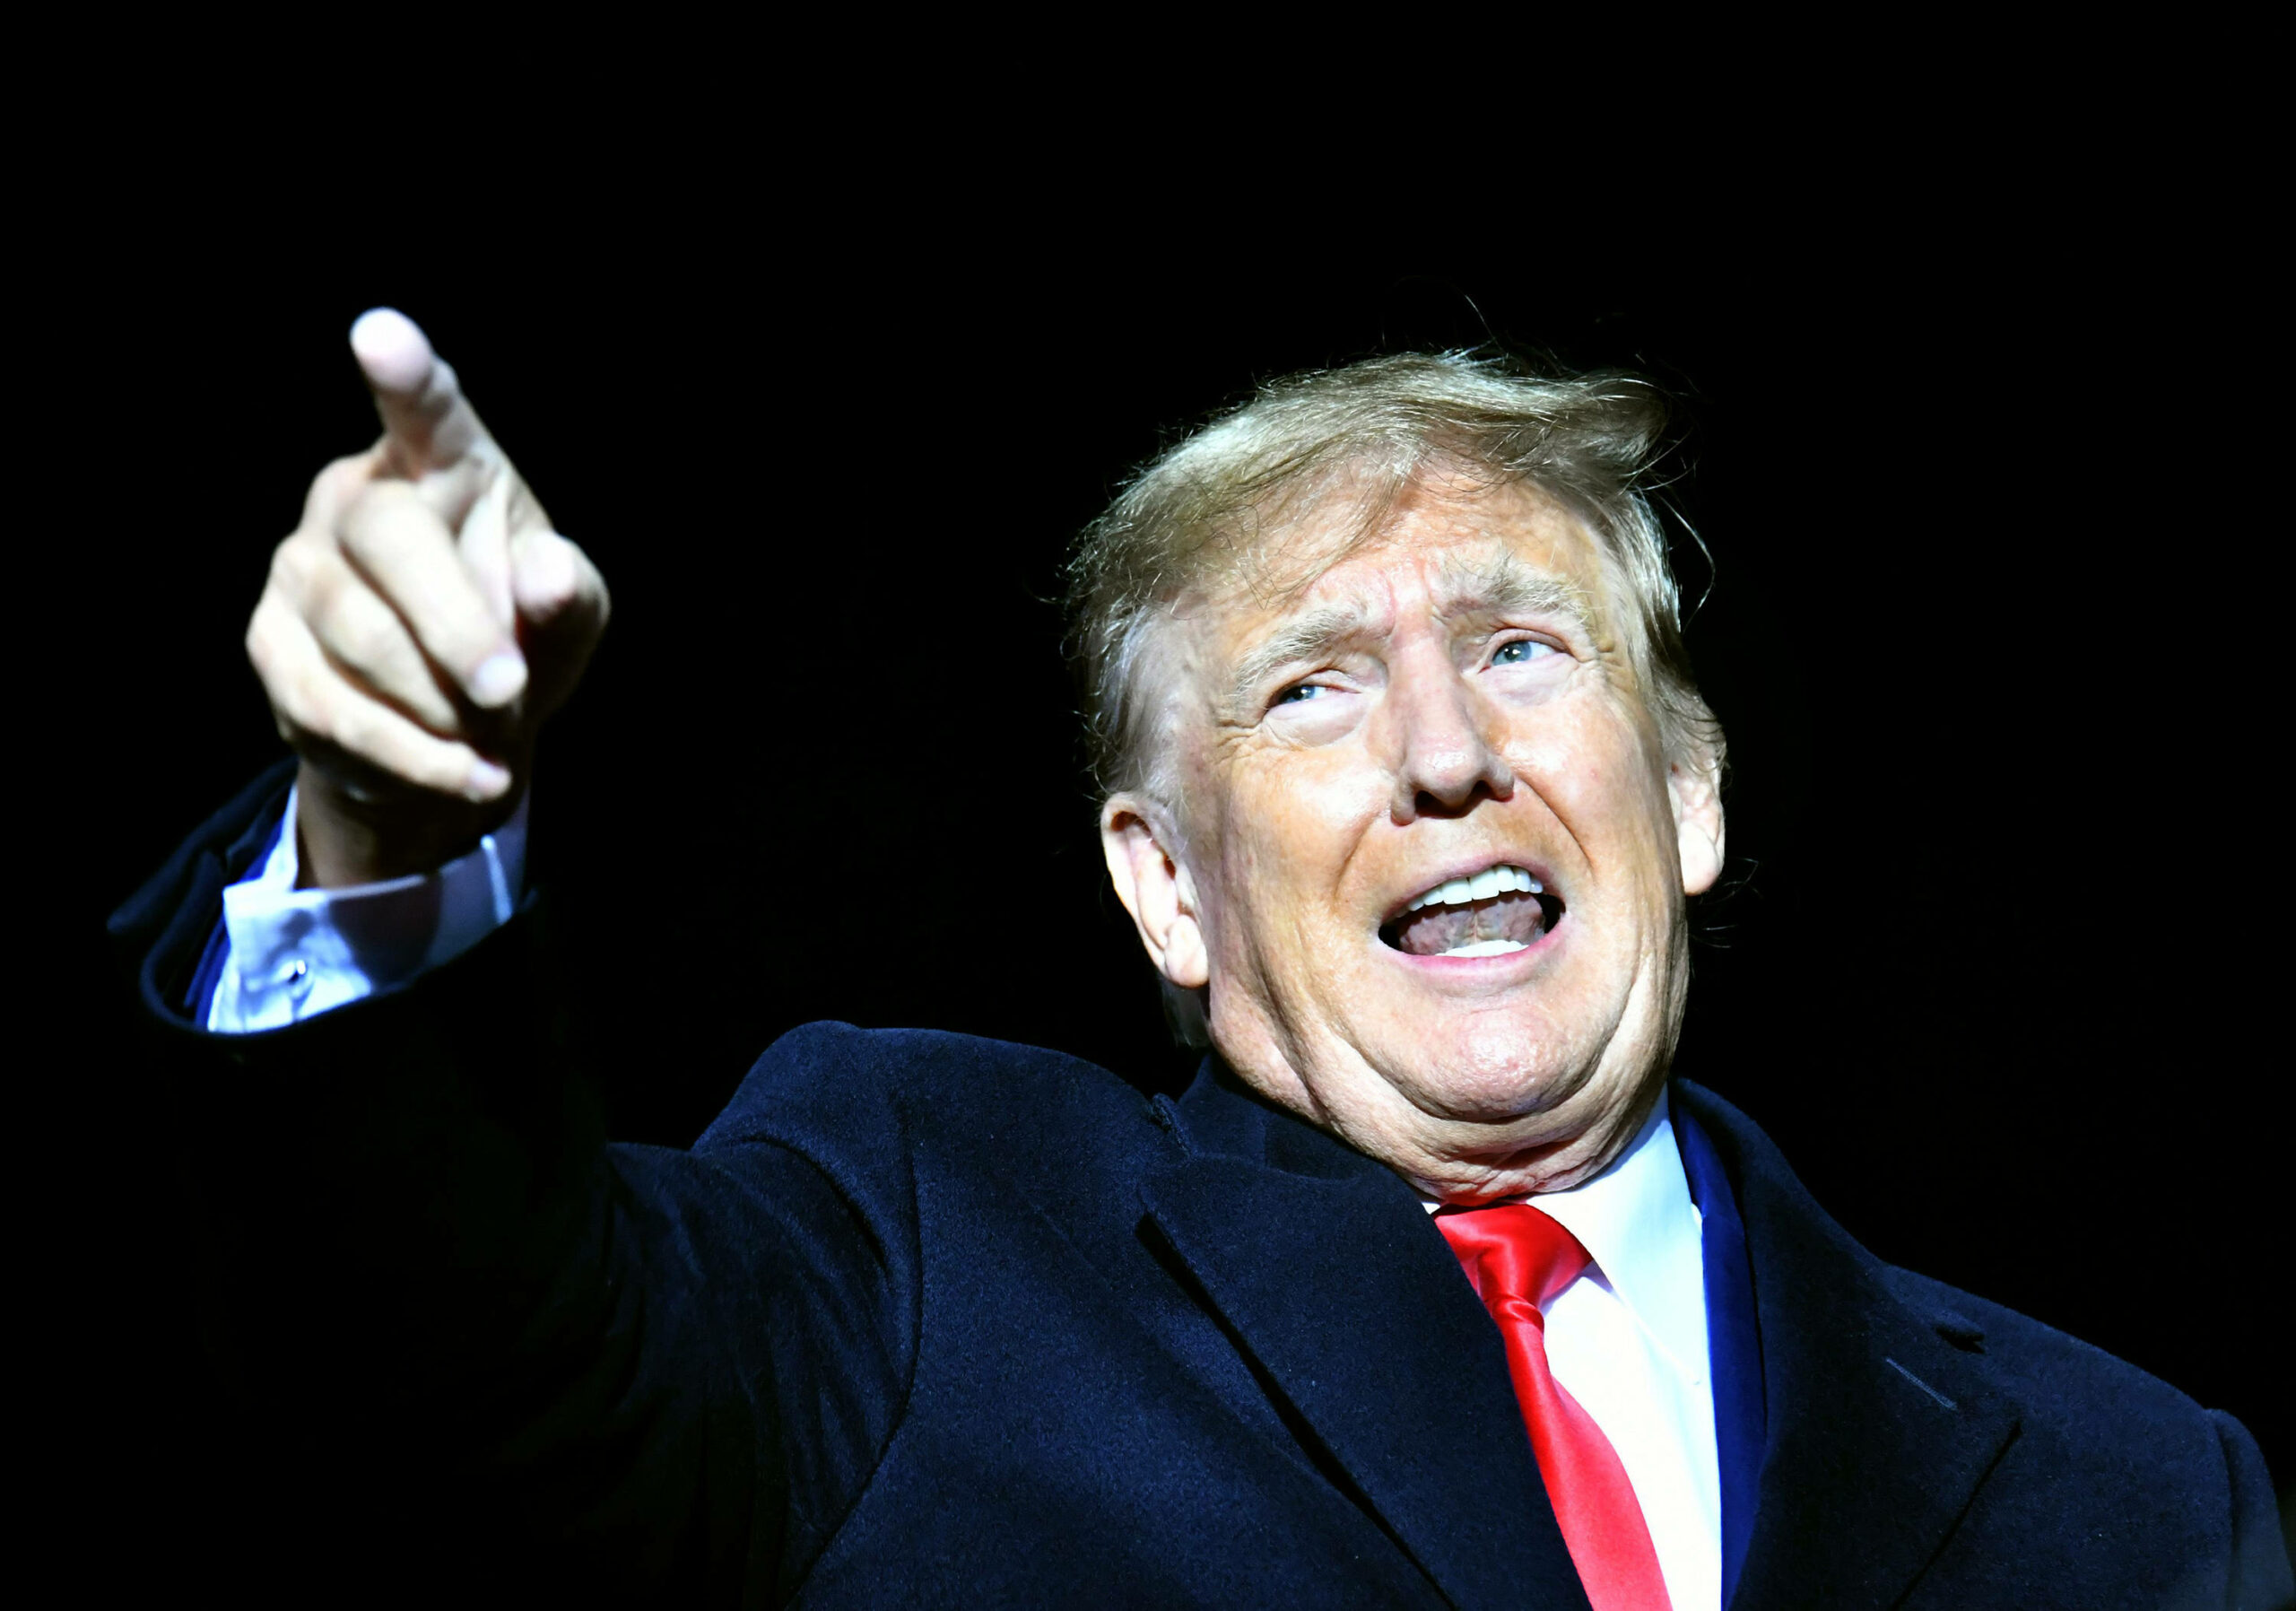 Man sieht Donald Trump wie er energisch spricht und irgendwo mit seinem rechten Zeigefinger hinzeigt. Er trägt einen schwarzen Anzug, ein weißes Hemd und eine rote Krawatte; der Hintergrund ist schwarz.